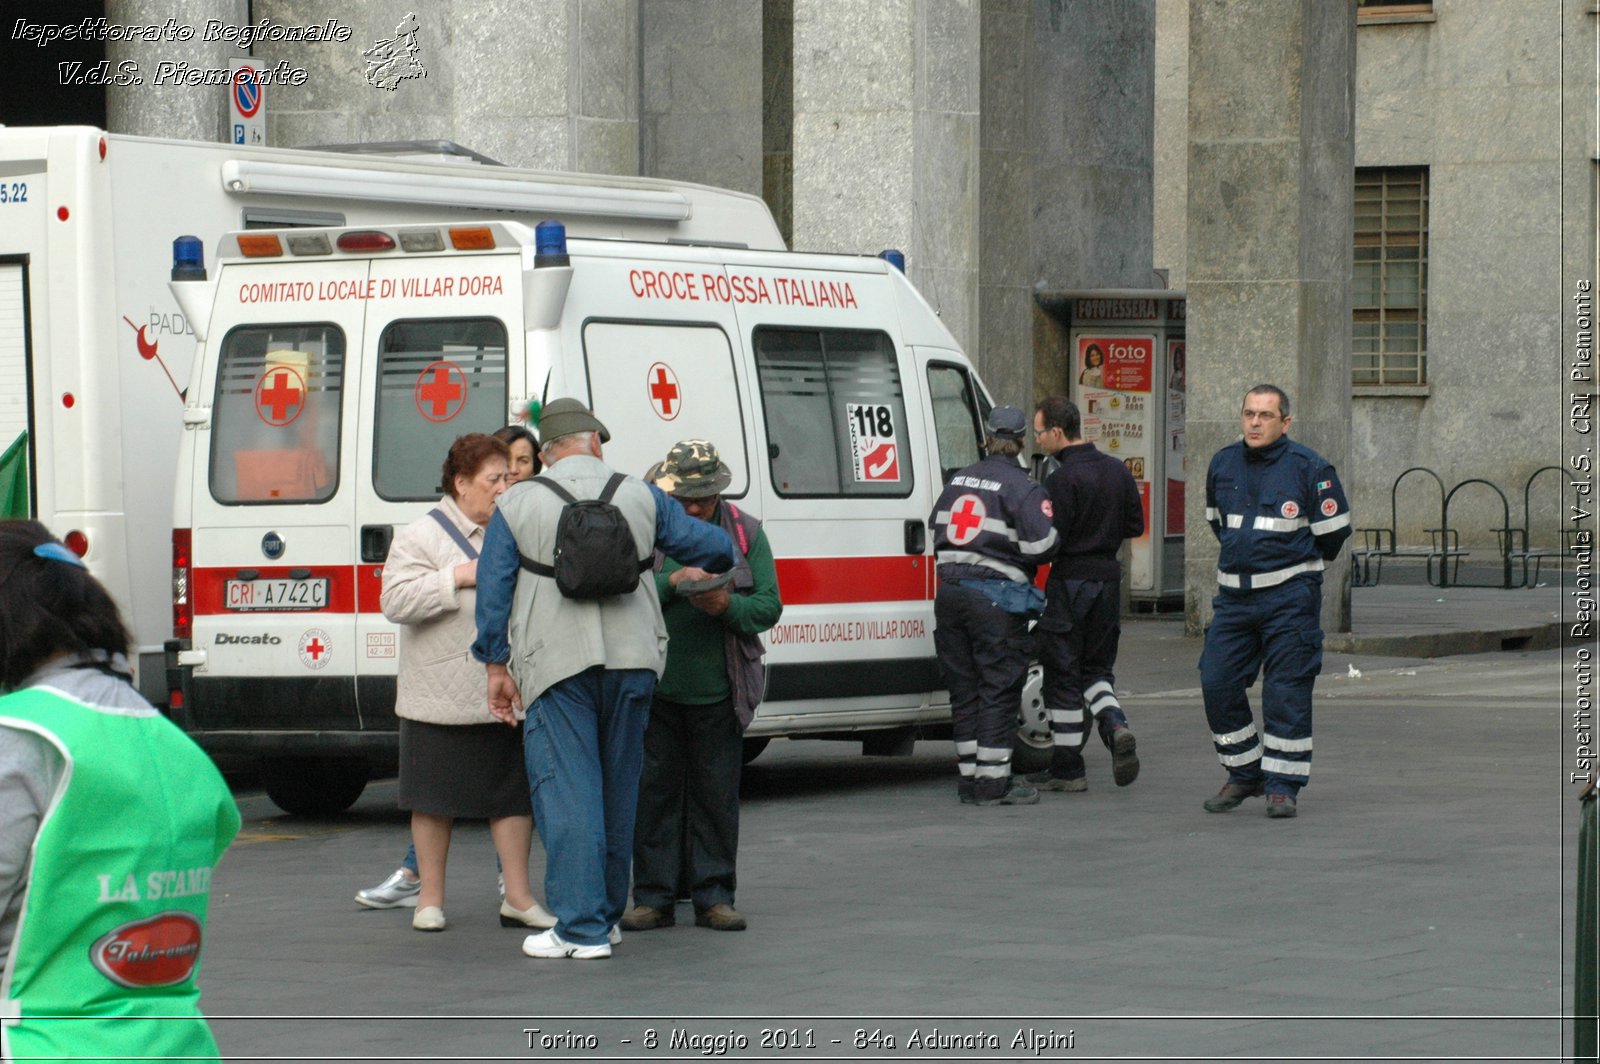 Torino  - 8 Maggio 2011 - 84a Adunata Nazionale Alpini -  Croce Rossa Italiana - Ispettorato Regionale Volontari del Soccorso Piemonte